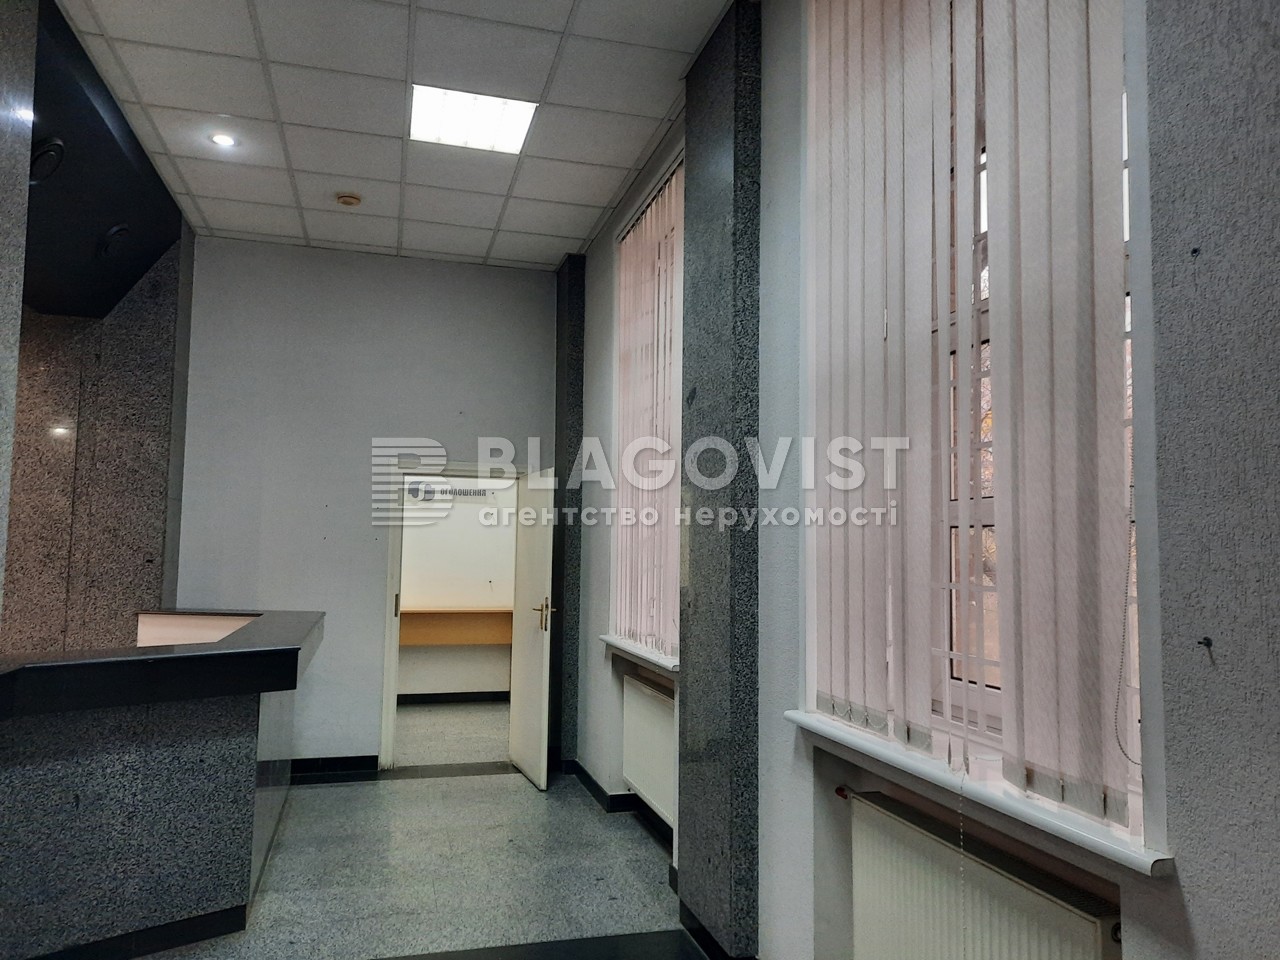  Нежилое помещение, Васильковская, Киев, R-40812 - Фото 6